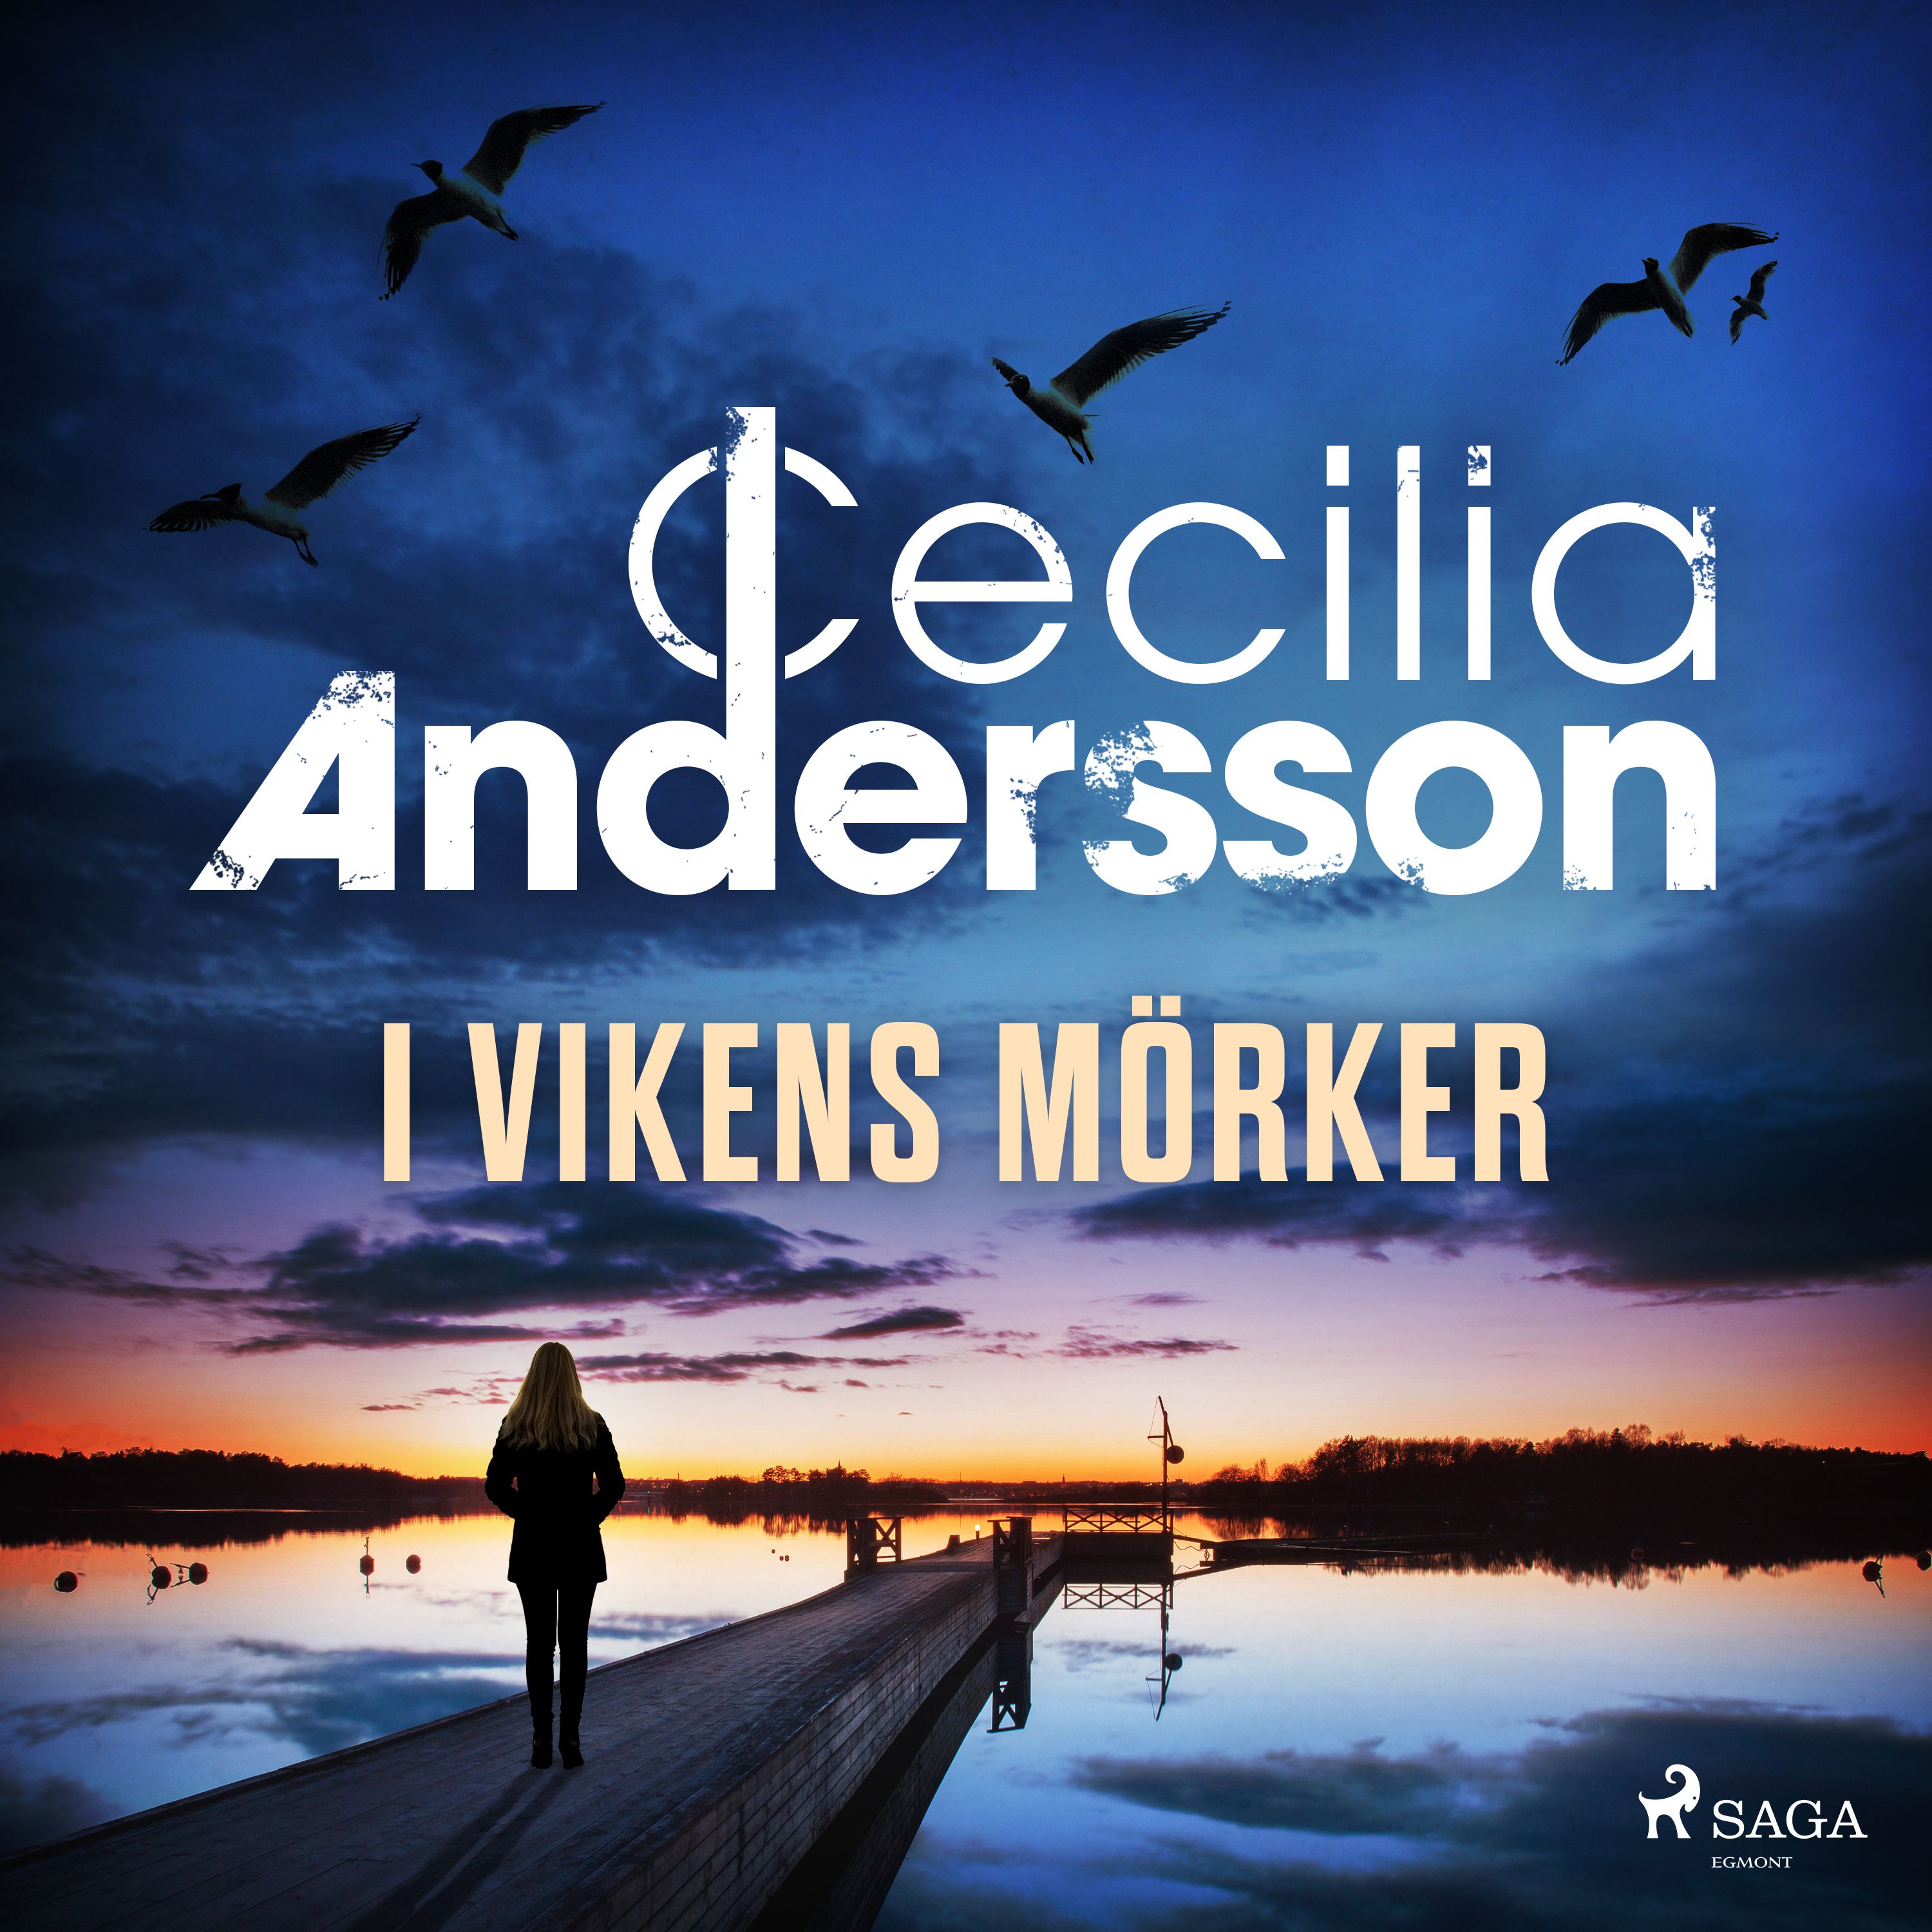 I vikens mörker, ljudbok av Cecilia Andersson